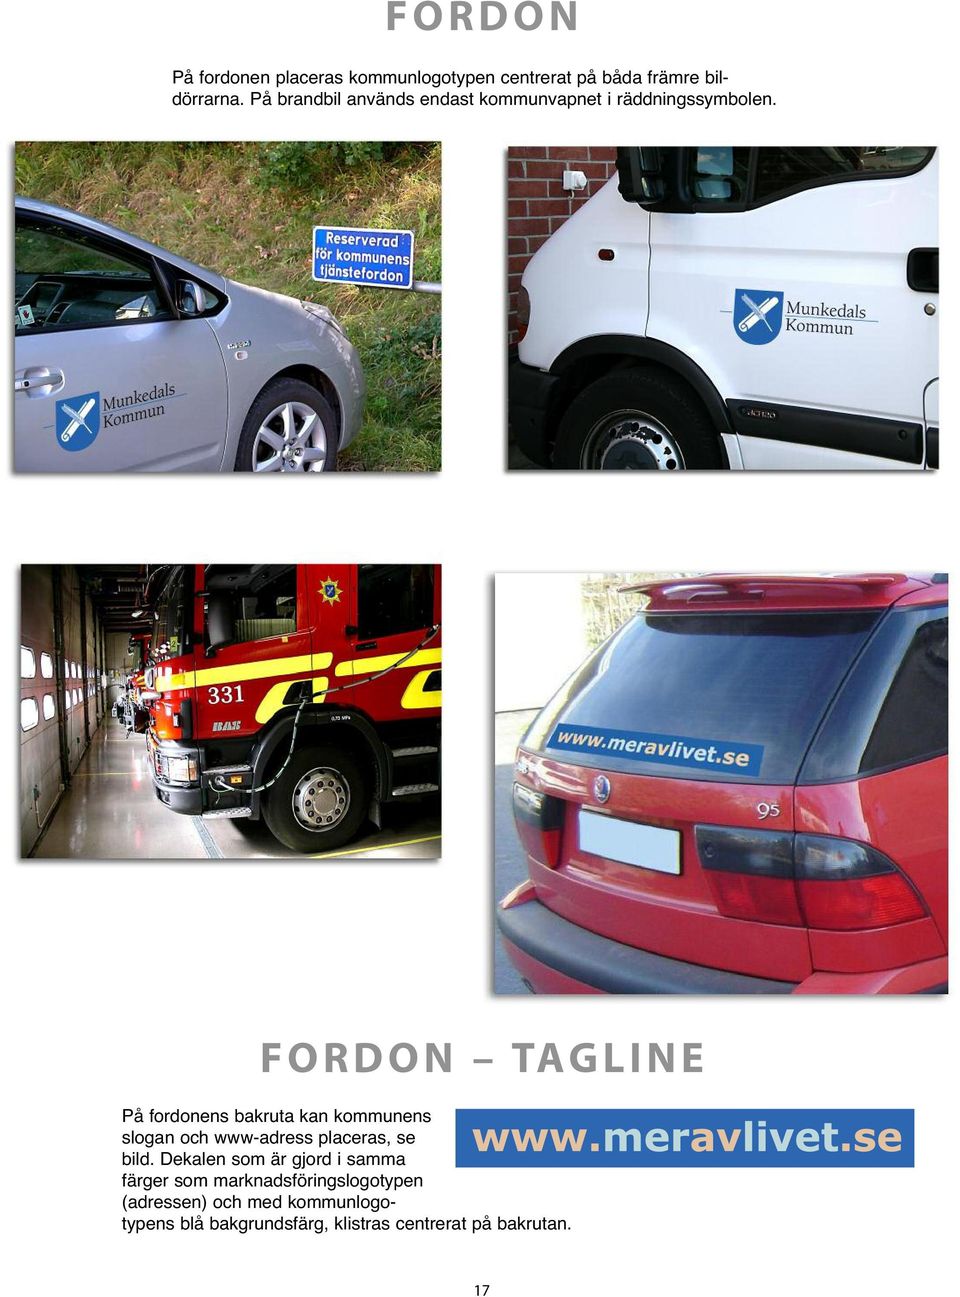 FORDON TAGLINE På fordonens bakruta kan kommunens slogan och www-adress placeras, se bild.